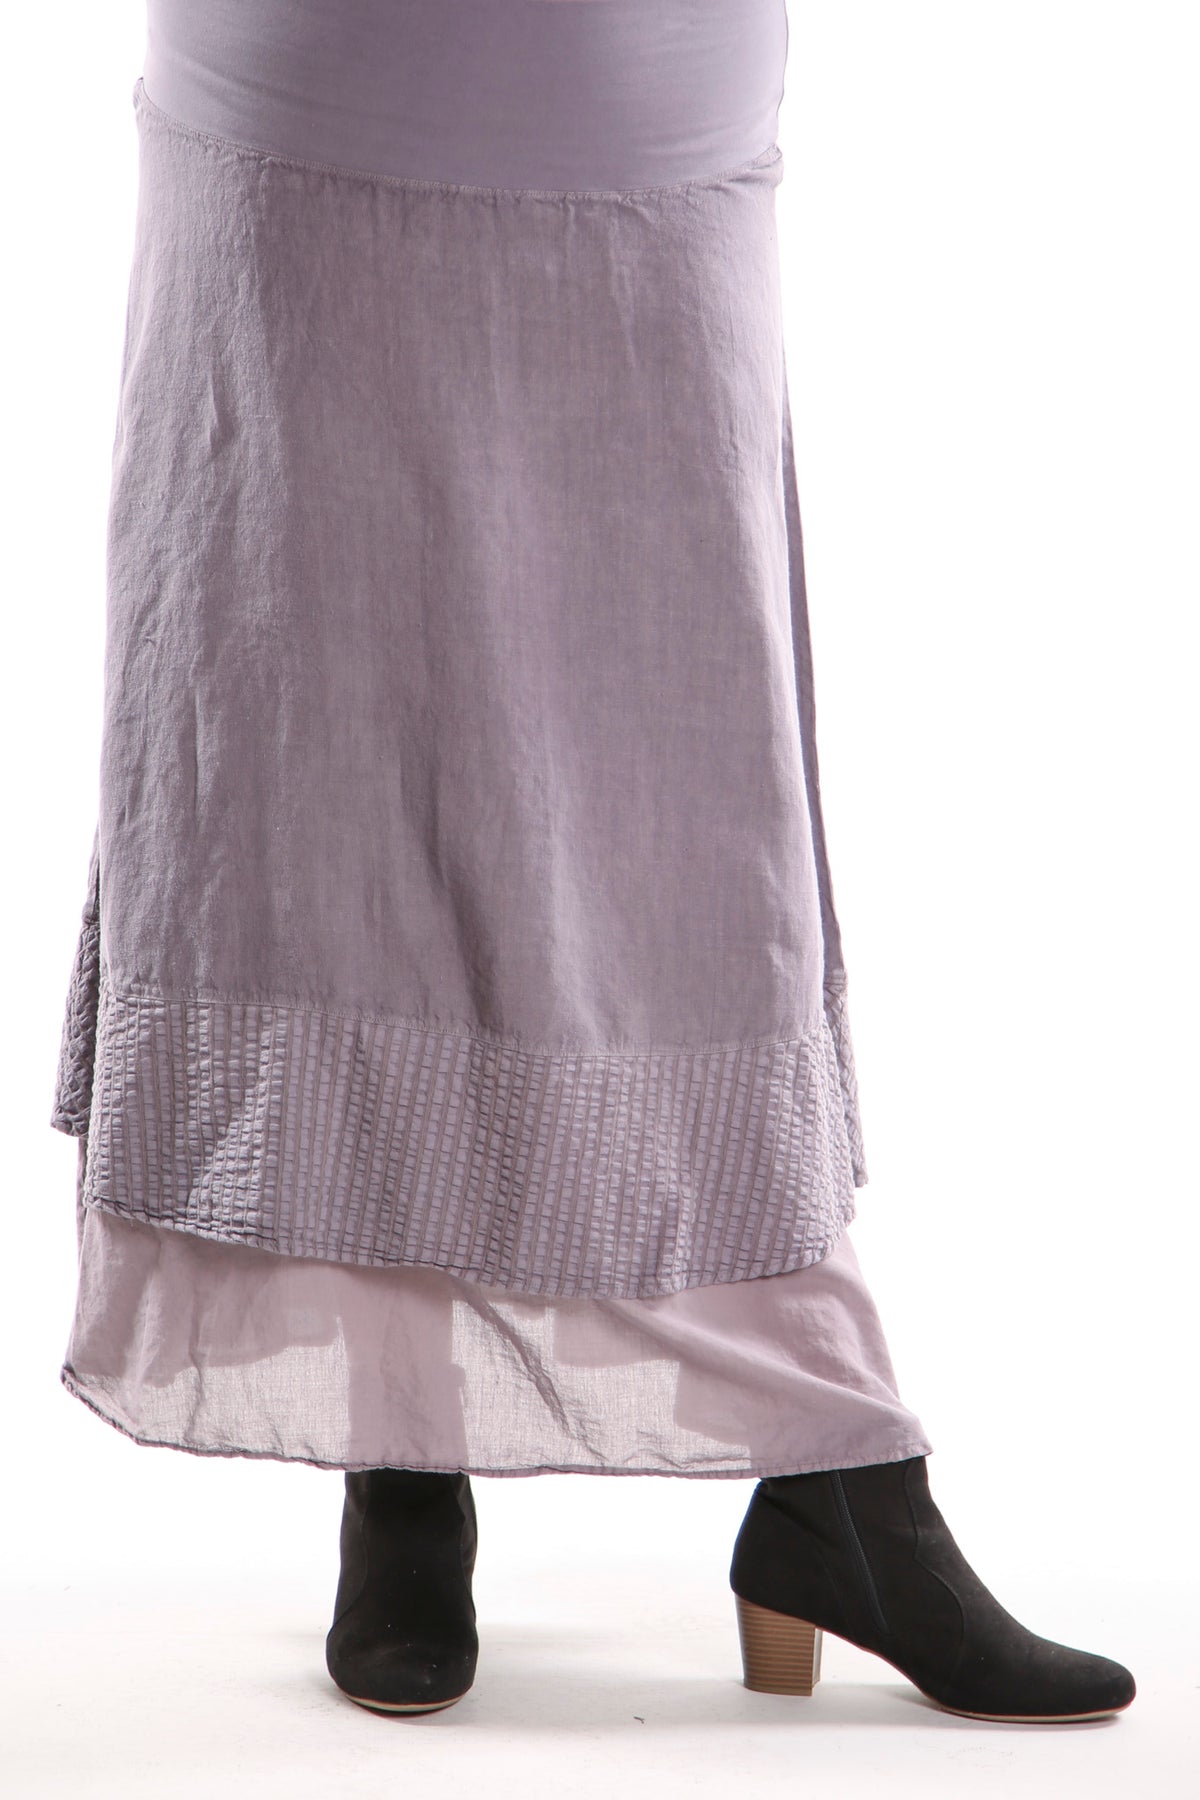 4165 Striped Tier Layer Skirt - UNPRINTED Haze